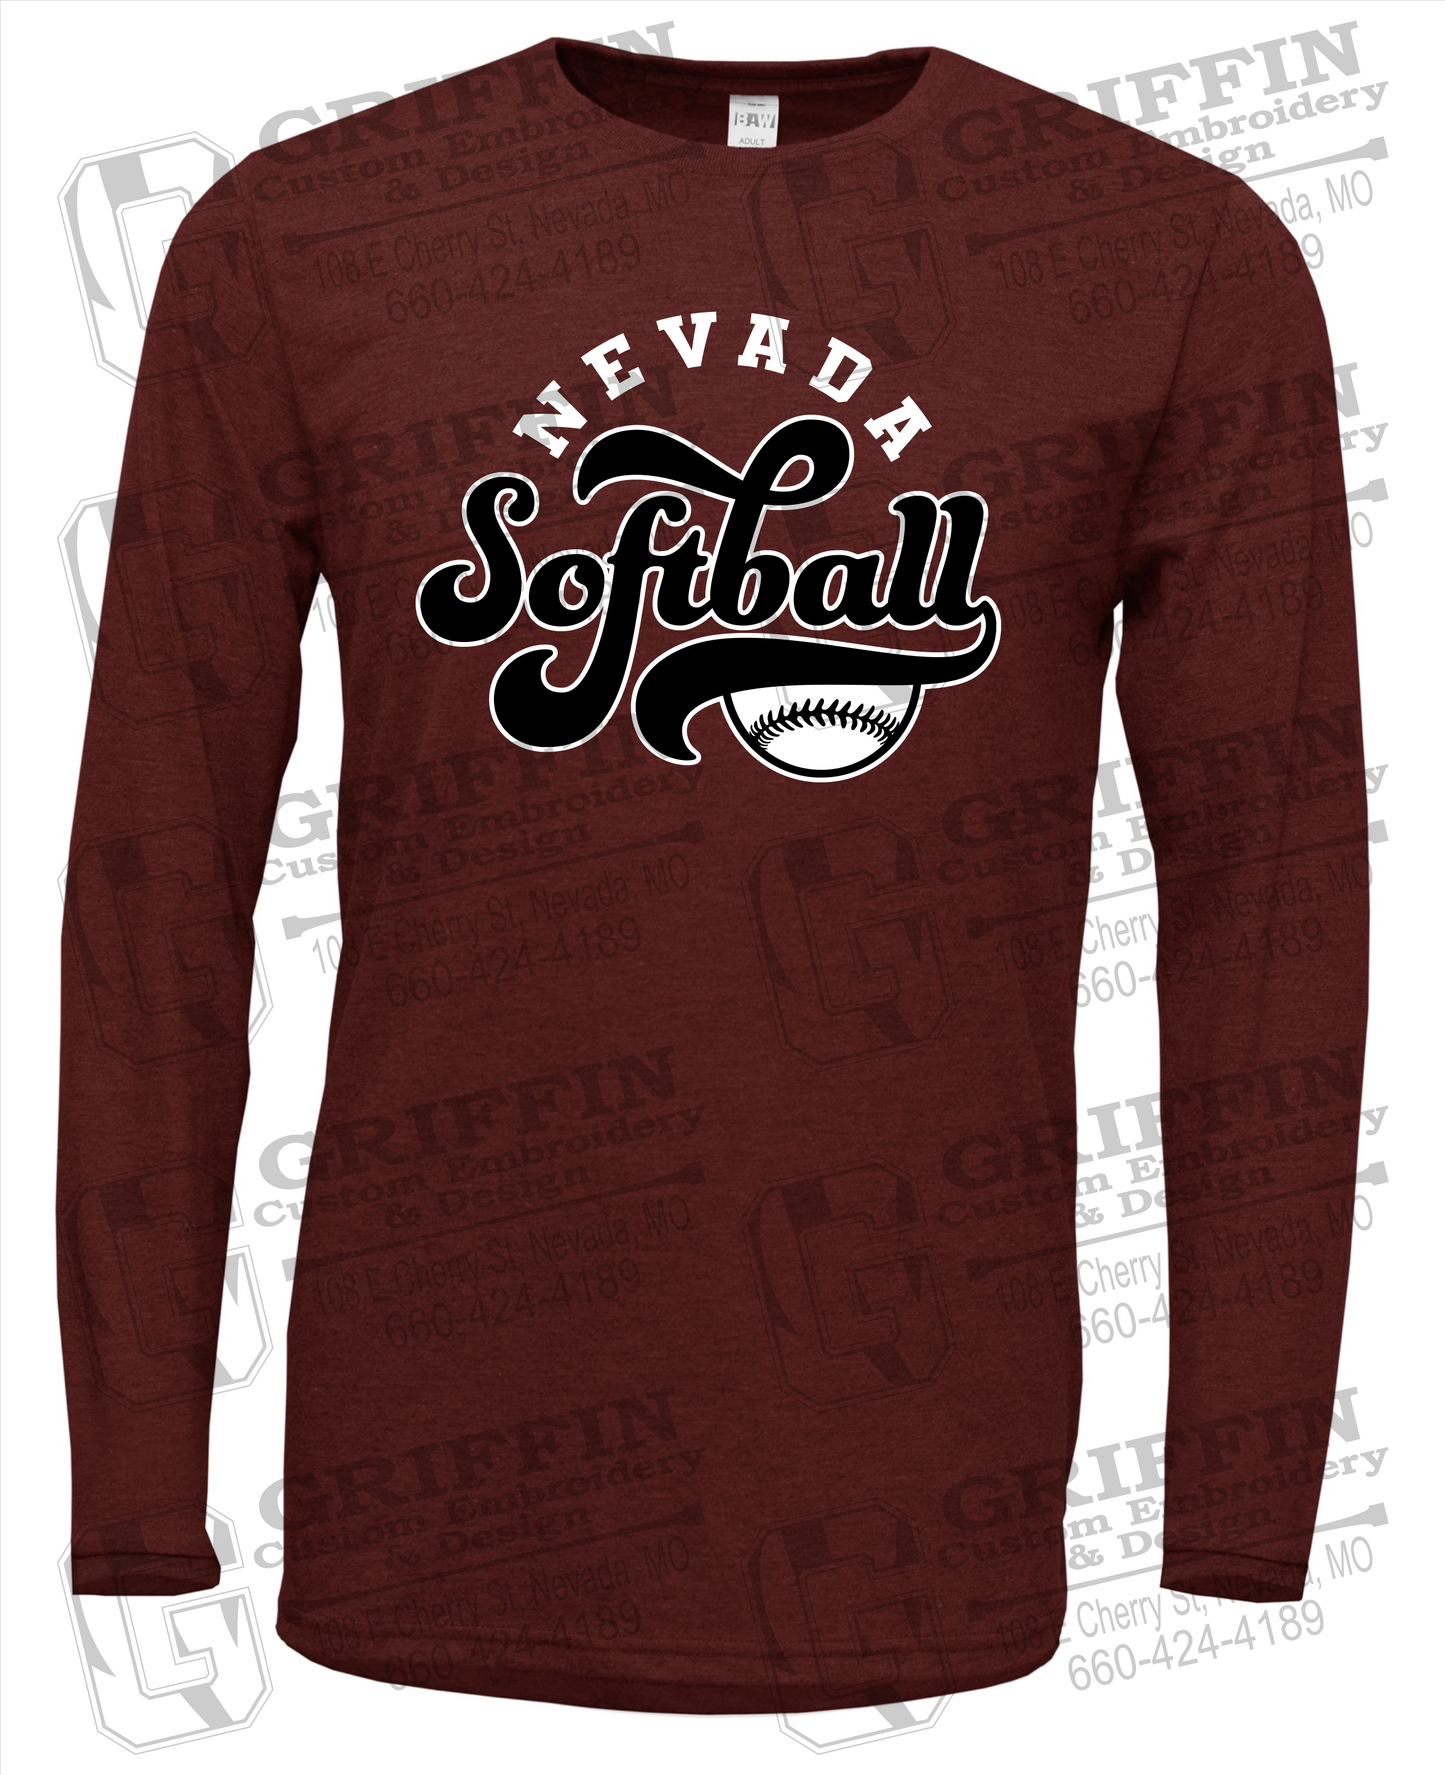 Soft-Tek Long Sleeve T-Shirt - Softball - Nevada Tigers 24-D